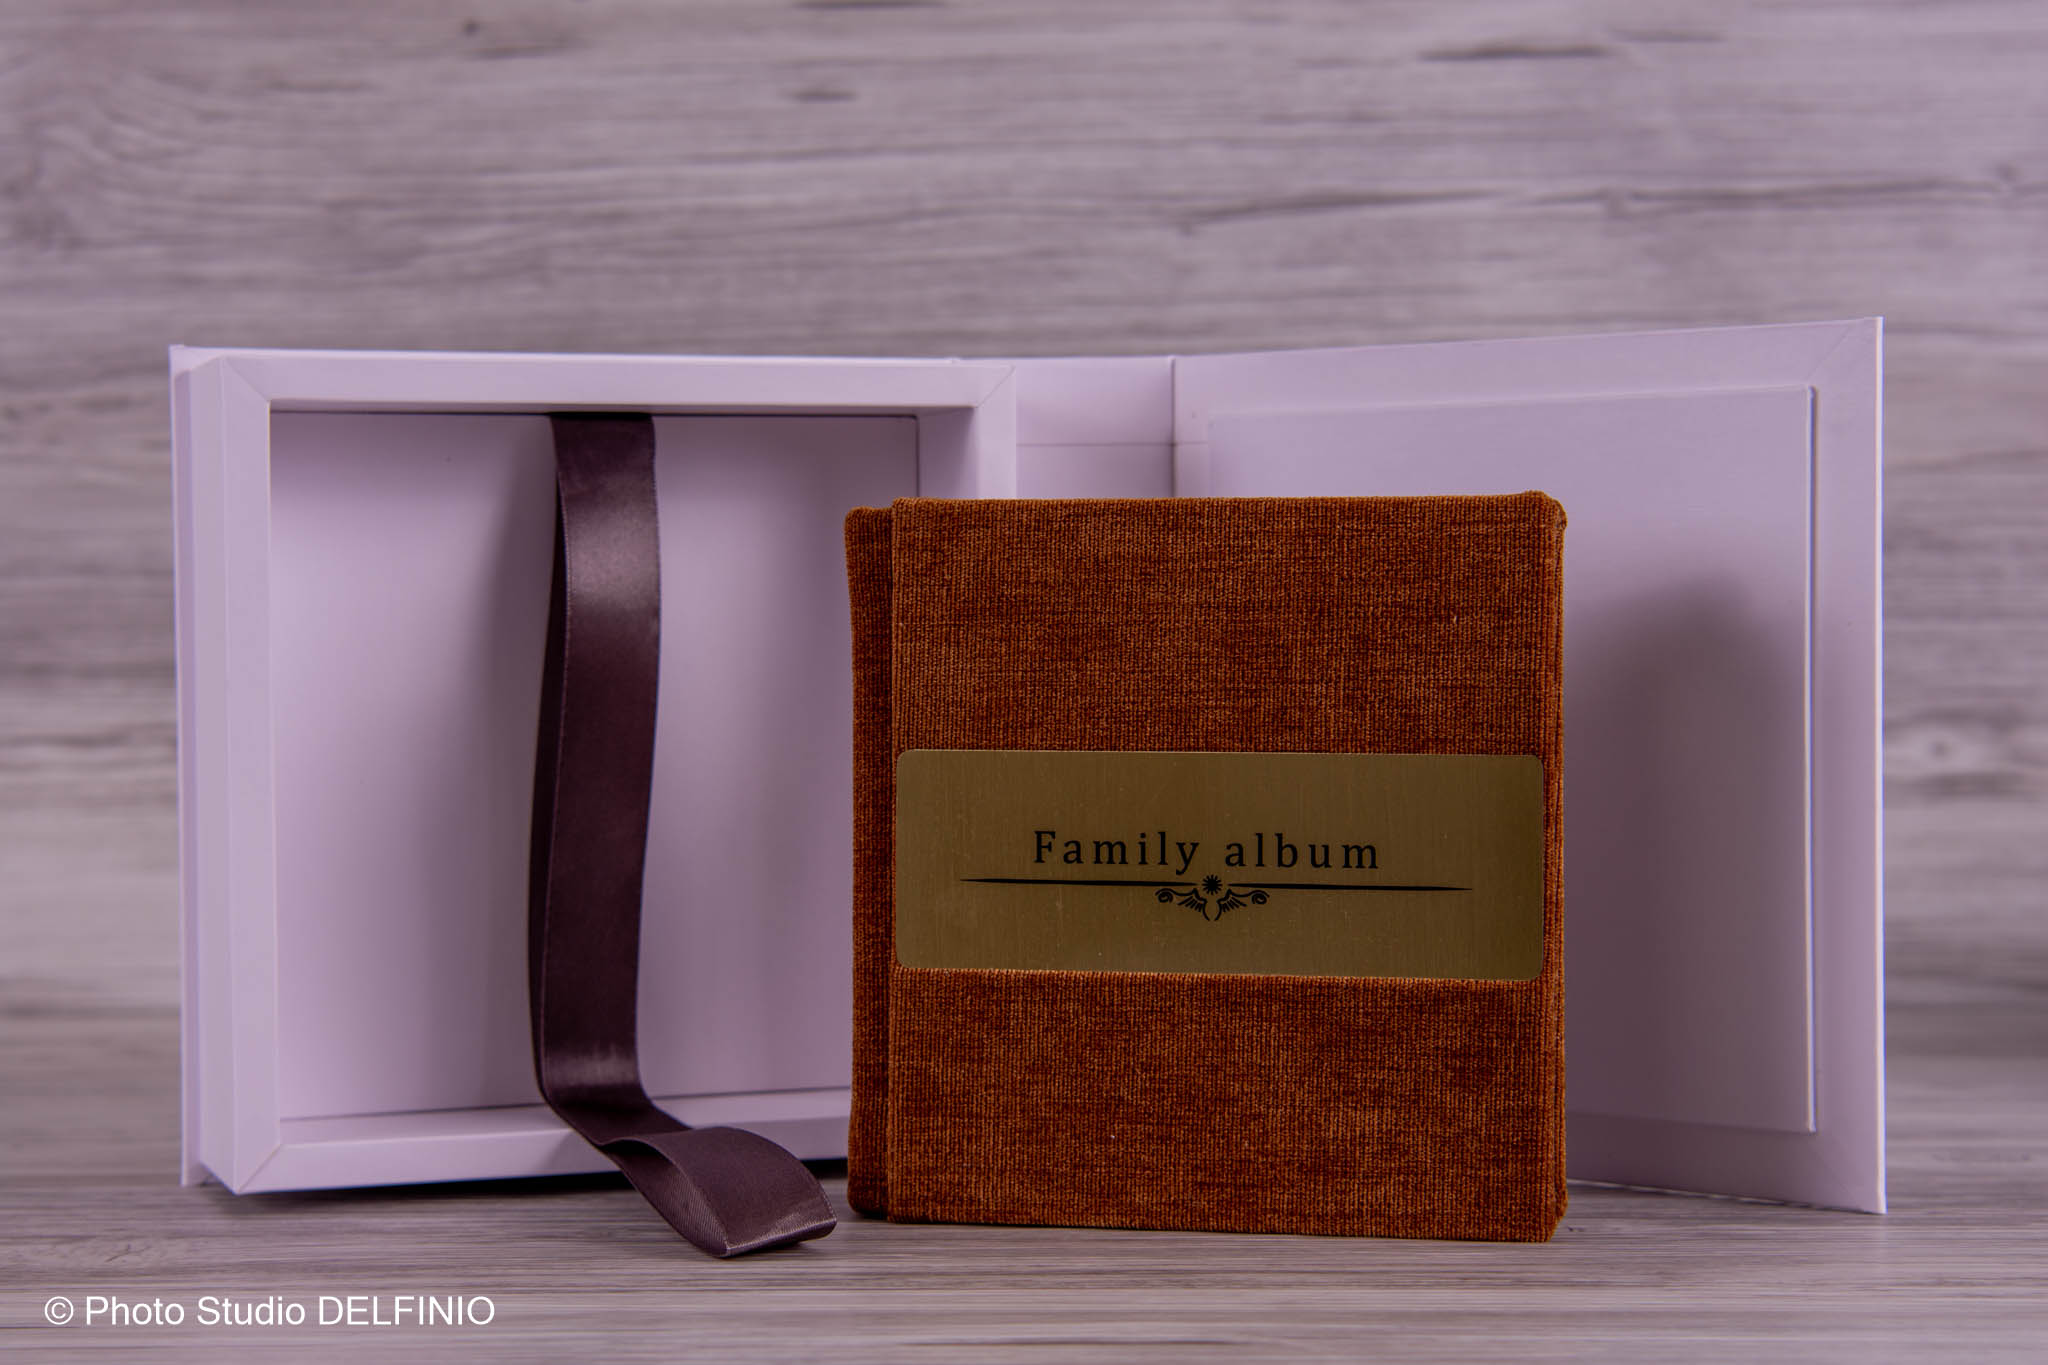 Family album (Arina)_1 (5)